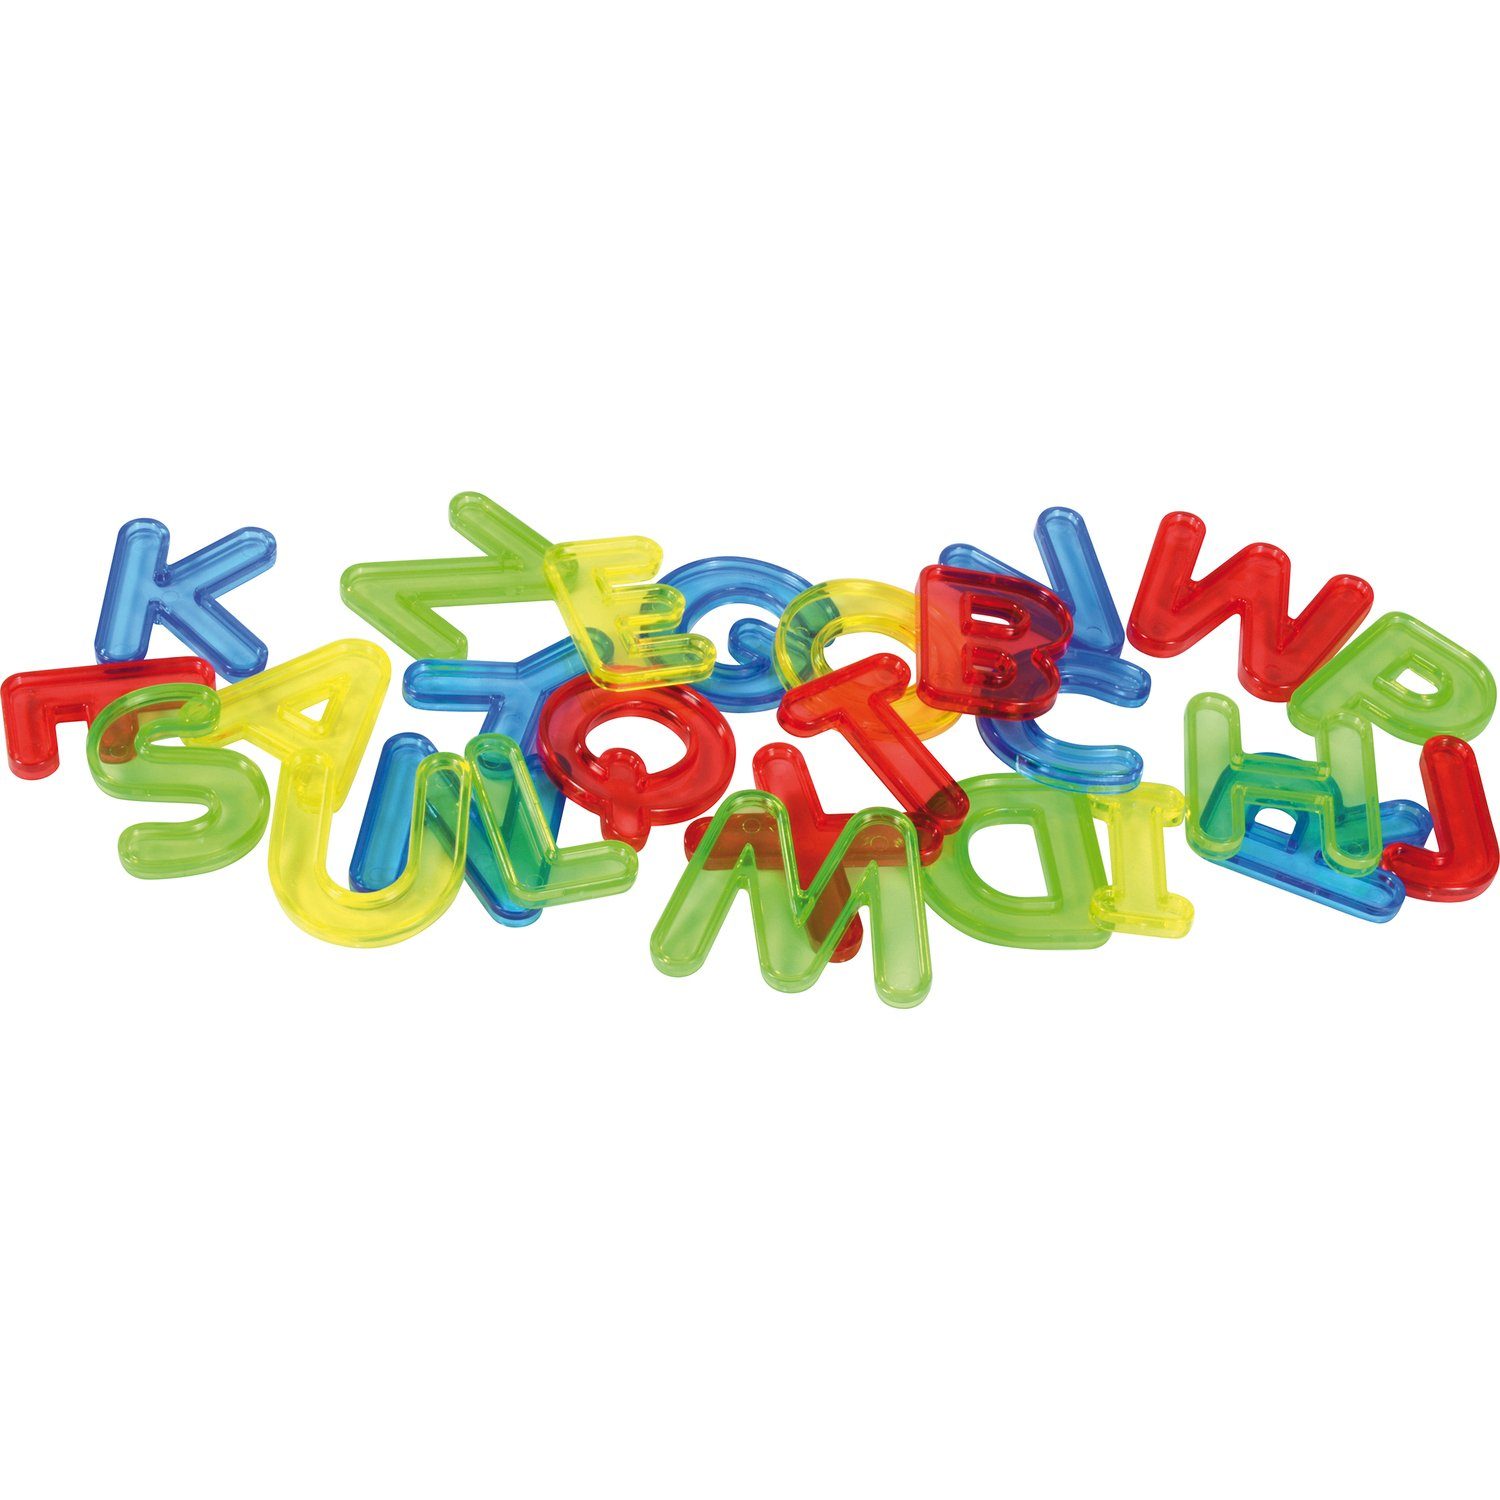 EDUPLAY Lernspielzeug Transparente Buchstaben